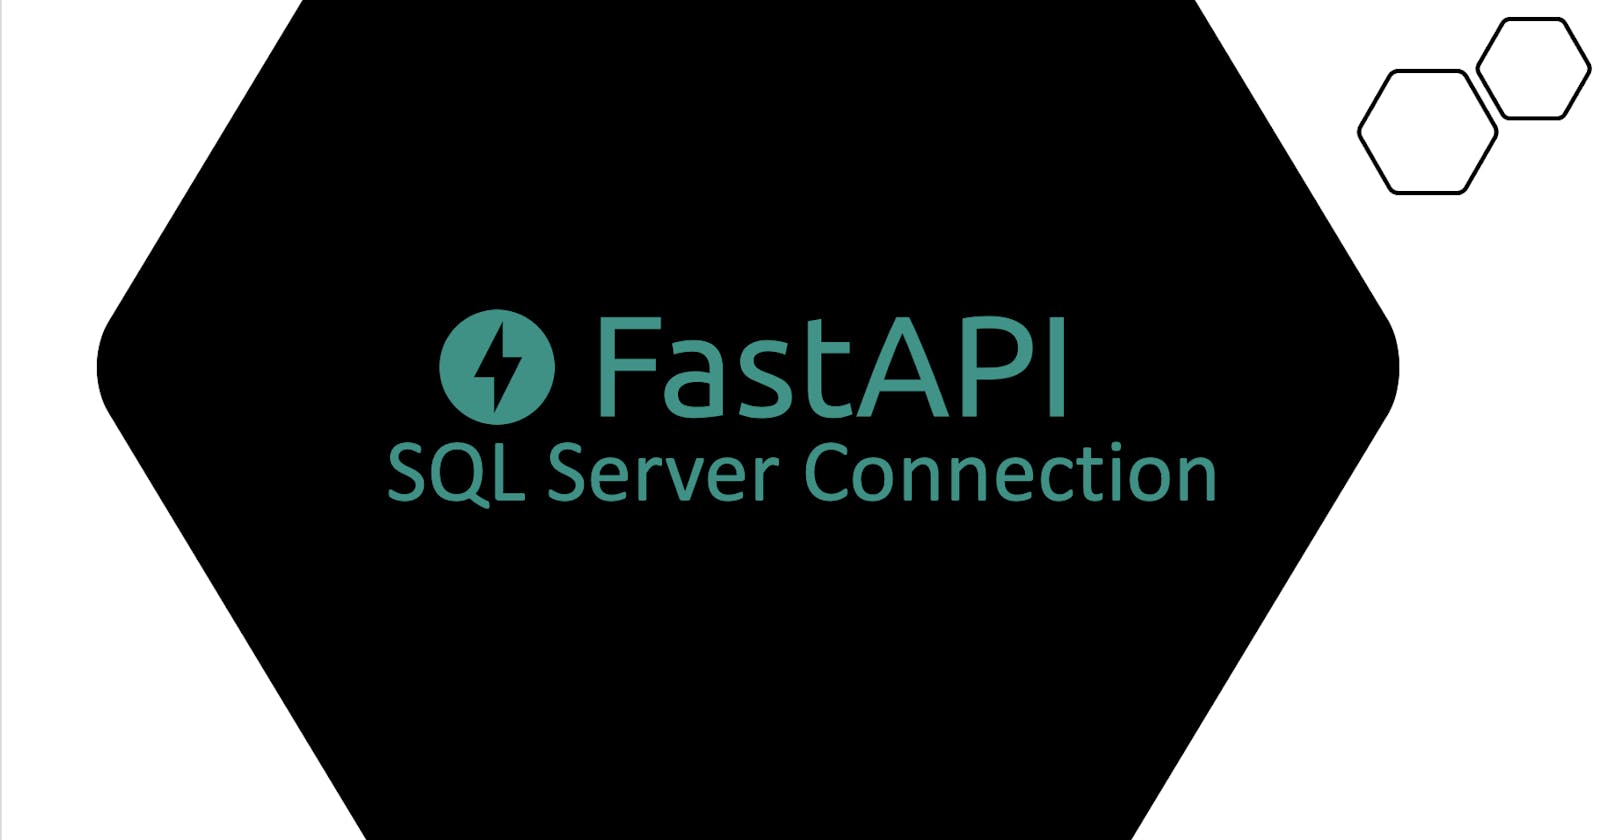 Fast API - SQL Server Connection